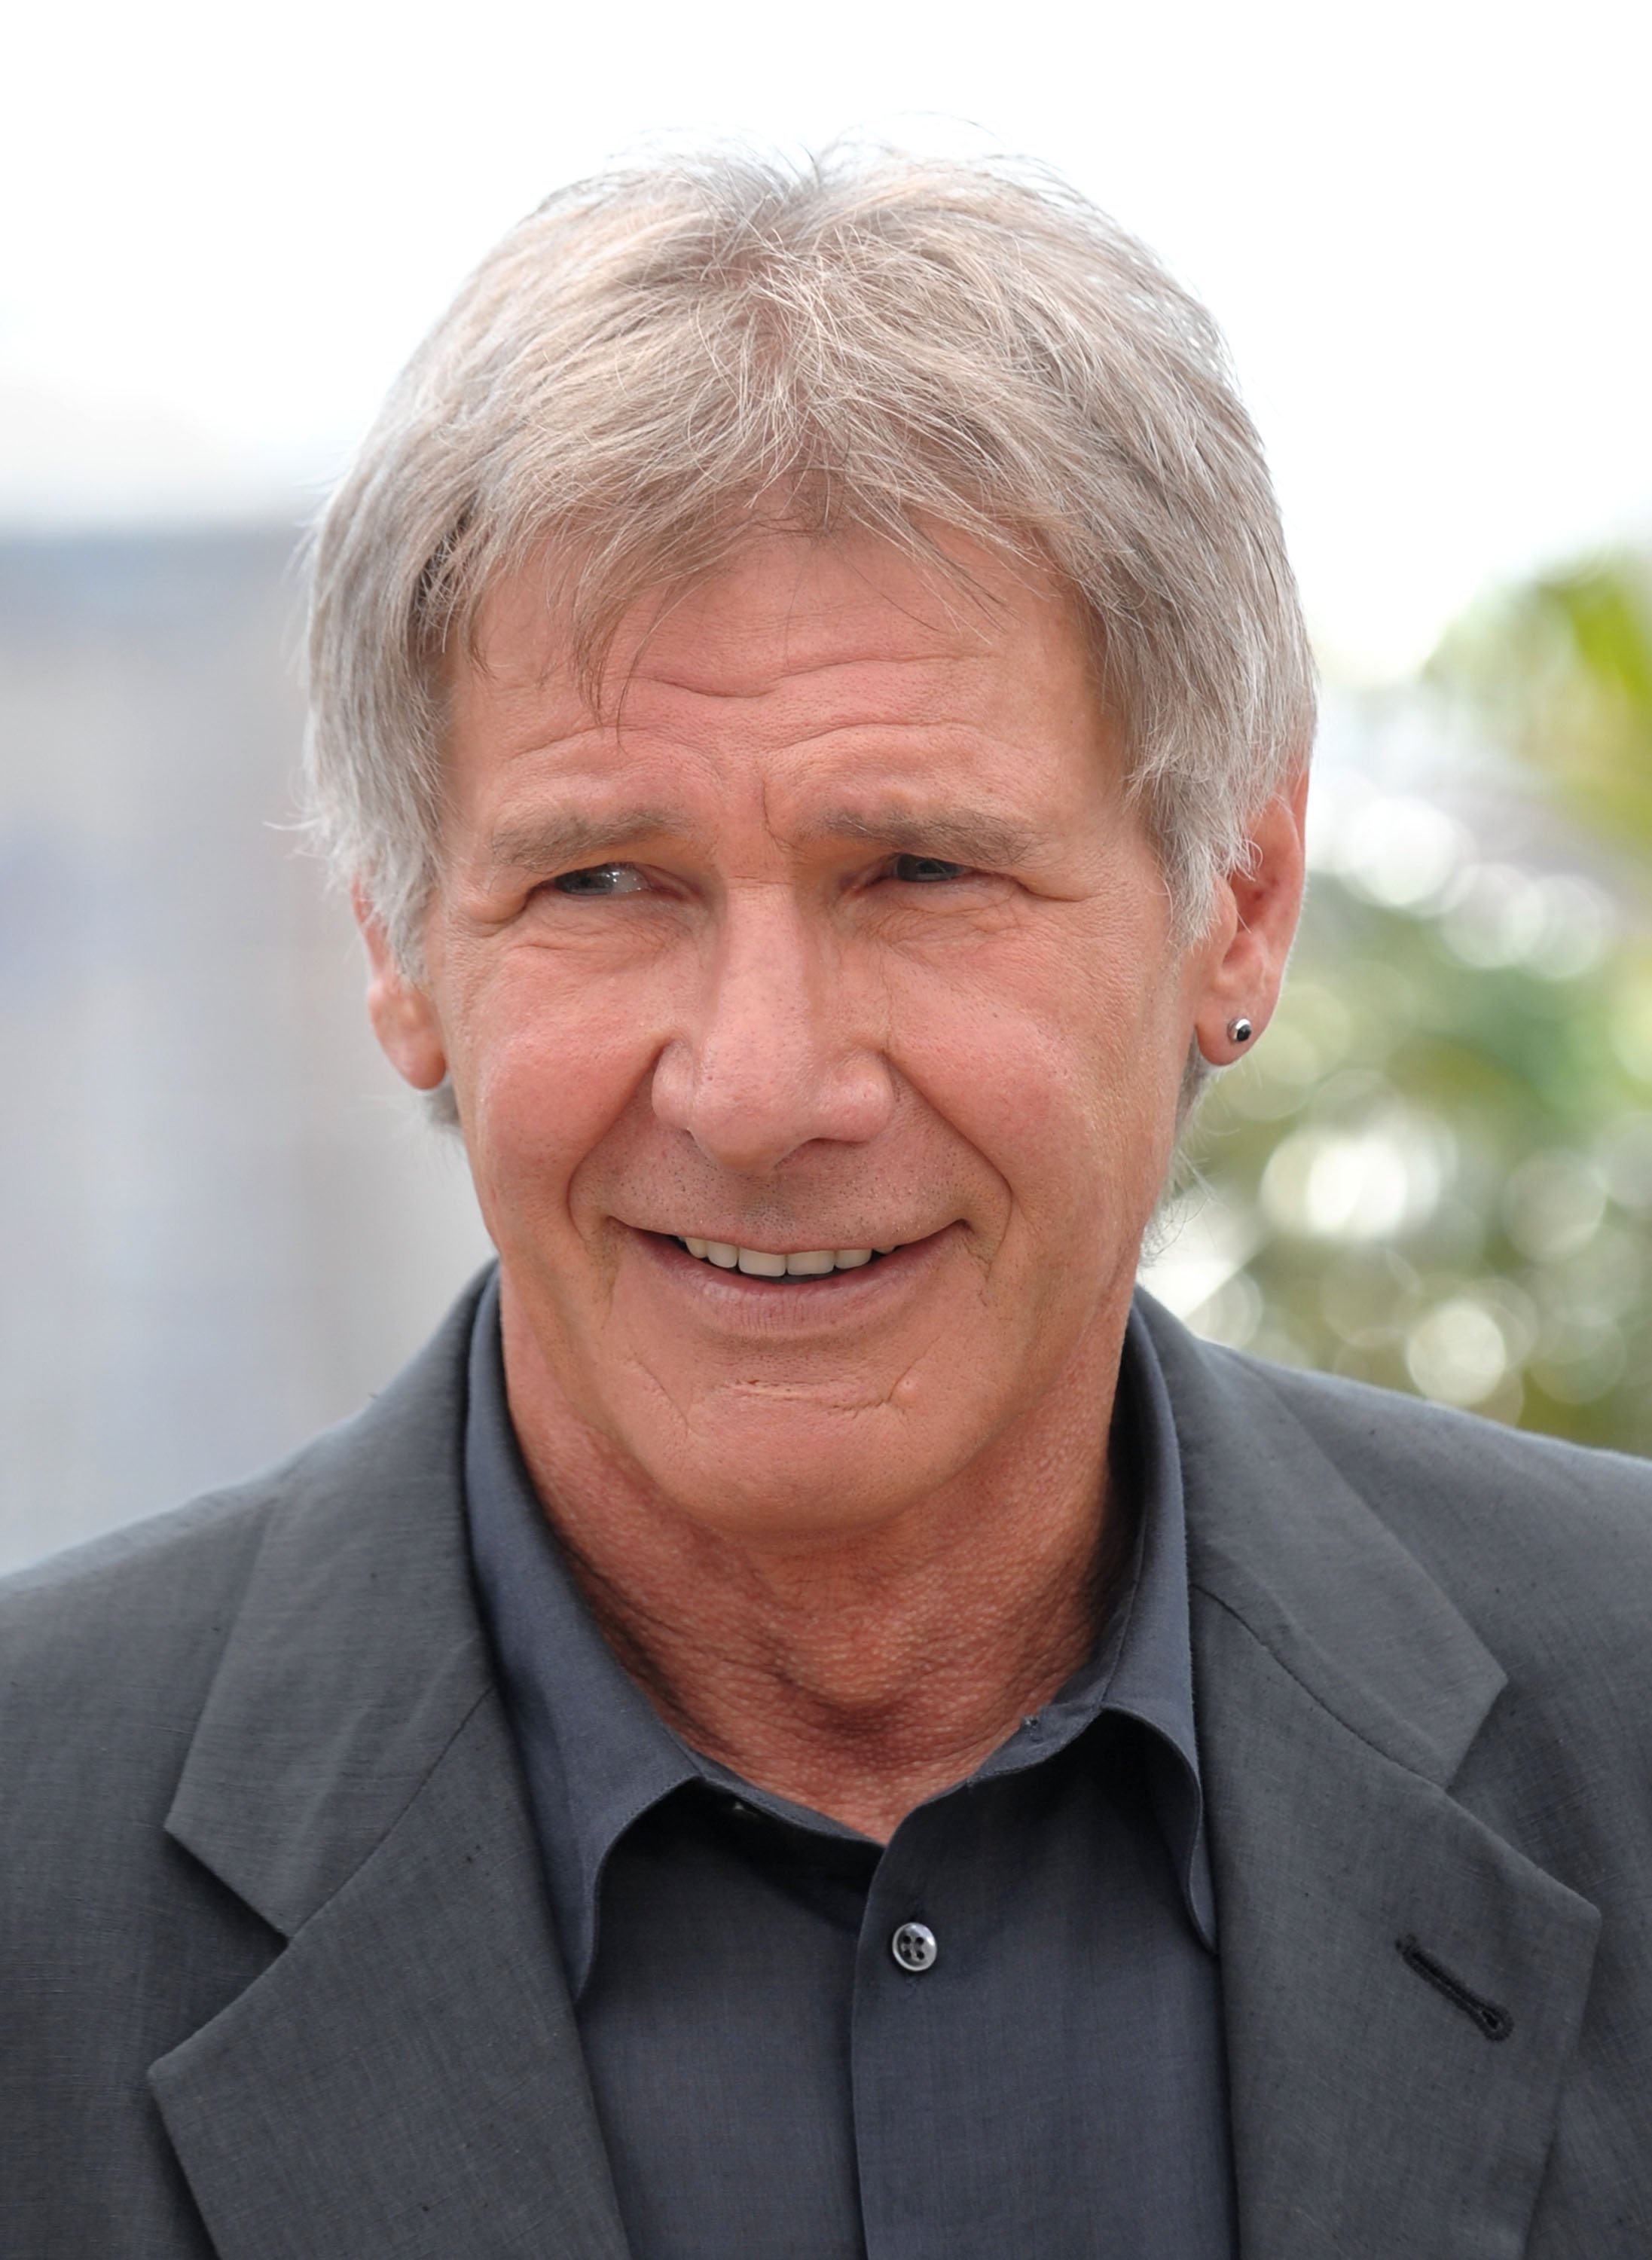 Harrison Ford bei den Filmfestspielen in Cannes 2003 | Quelle: Getty Images